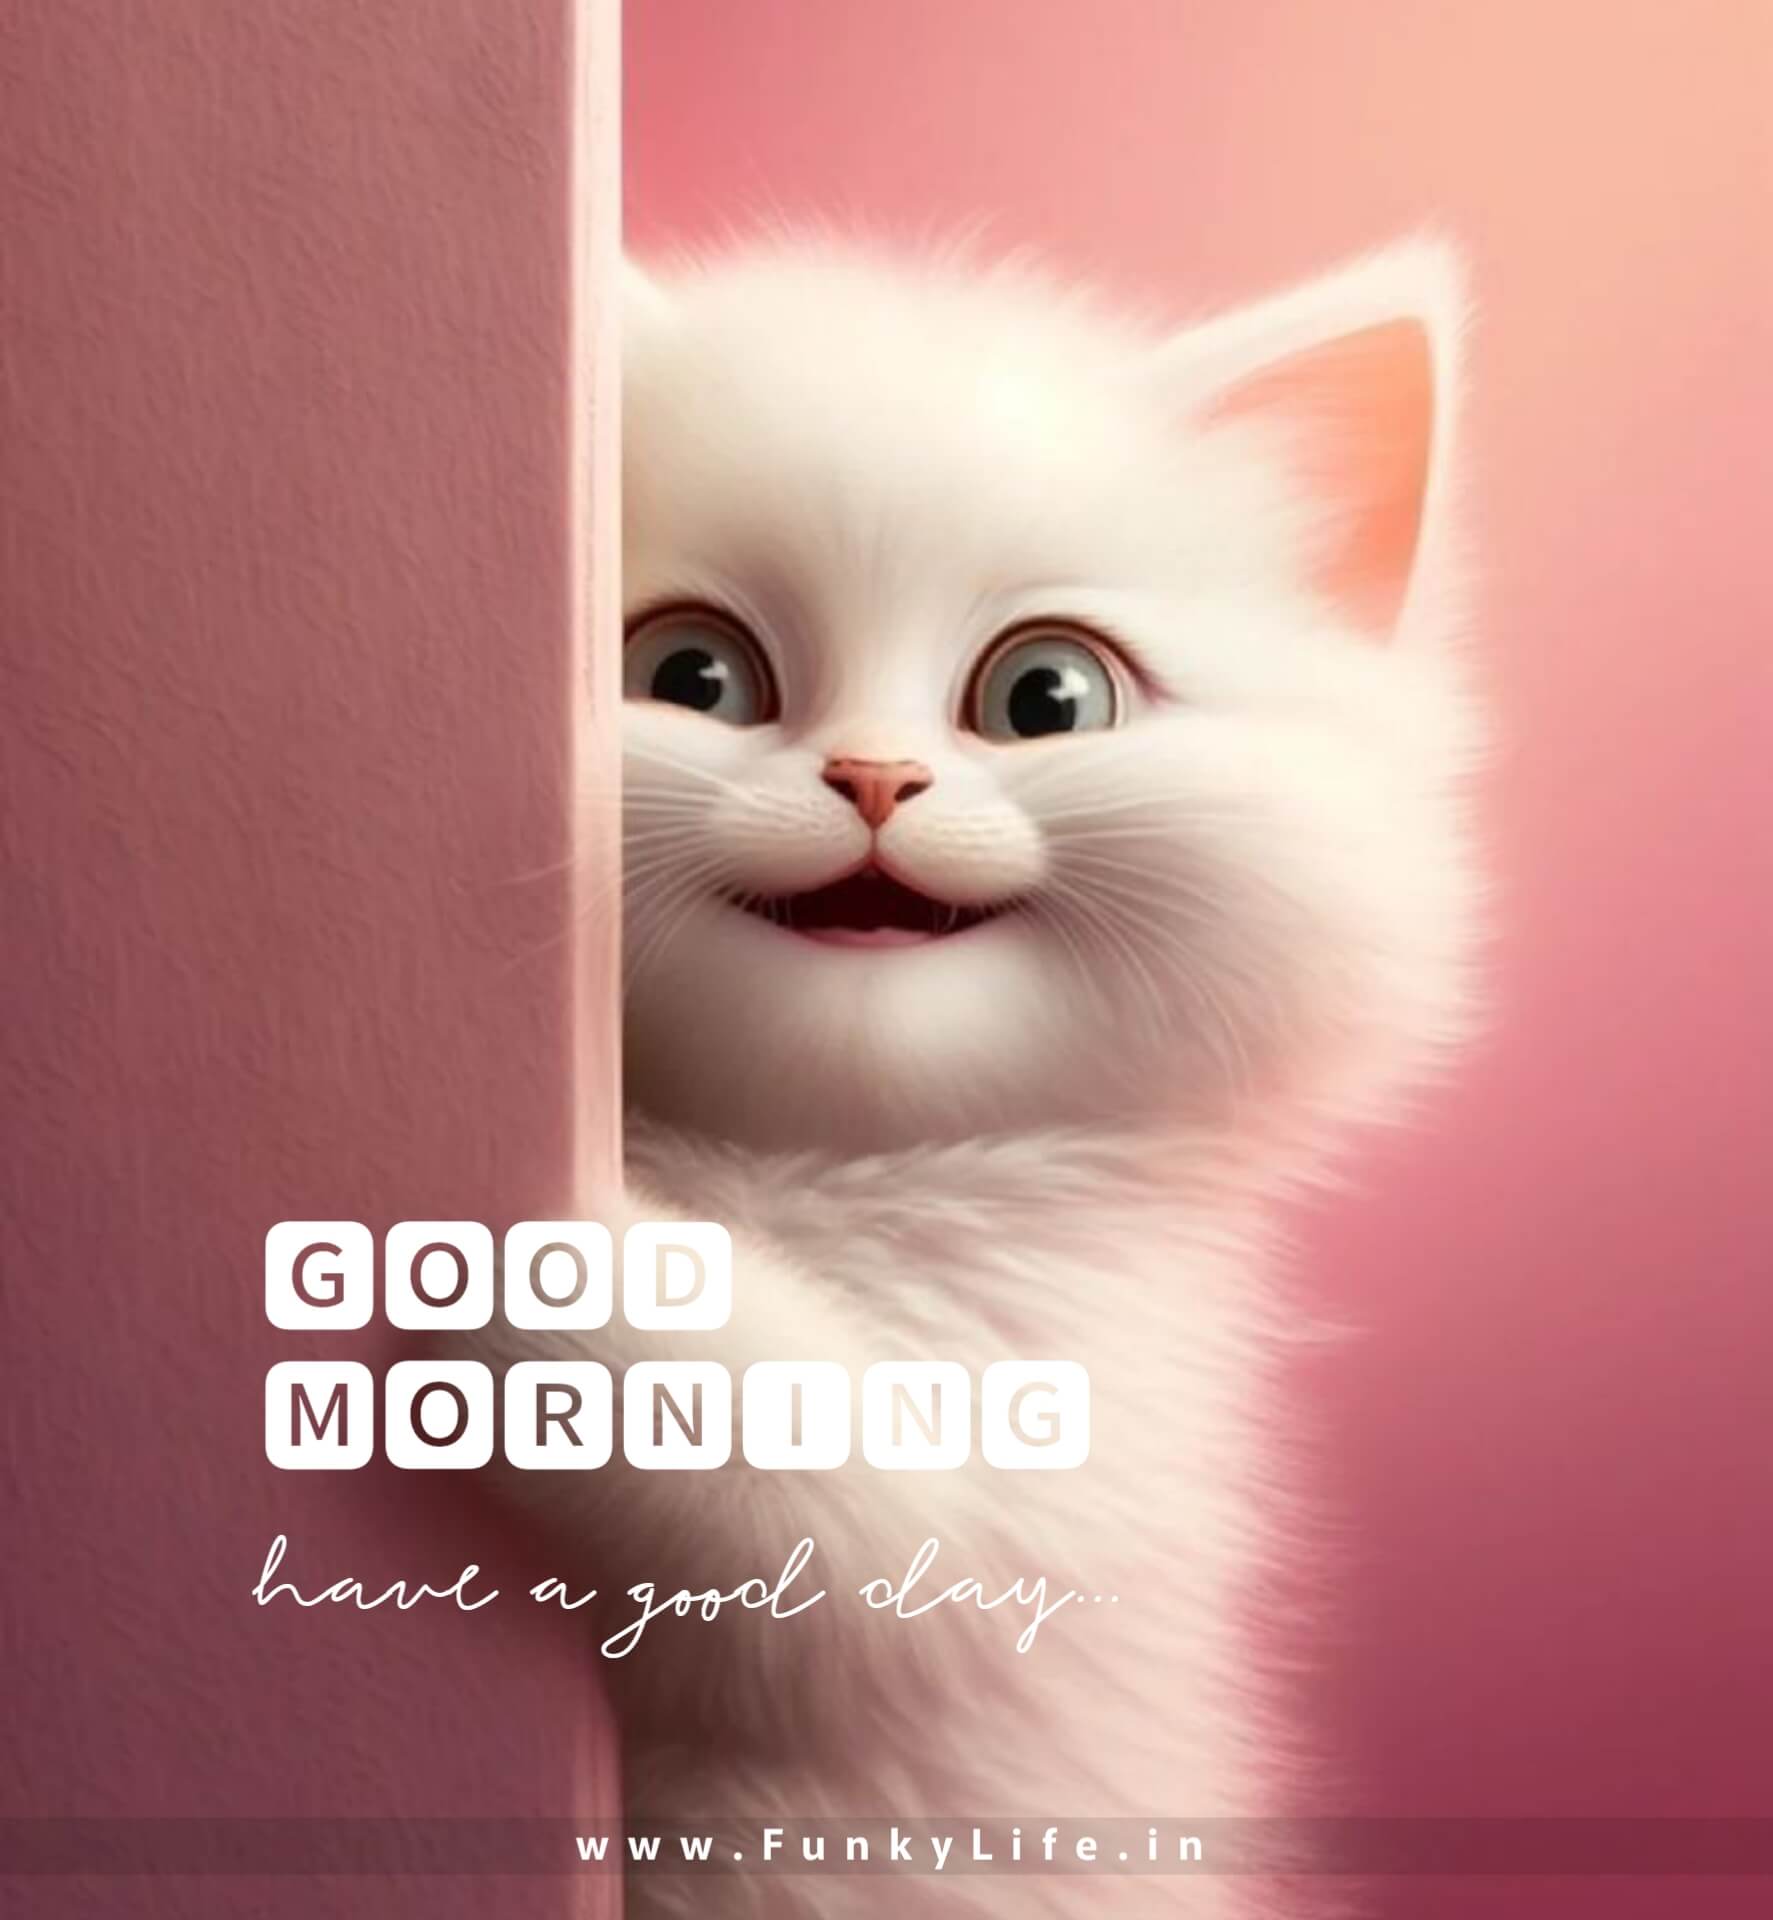 Cute cat Good Morning Image